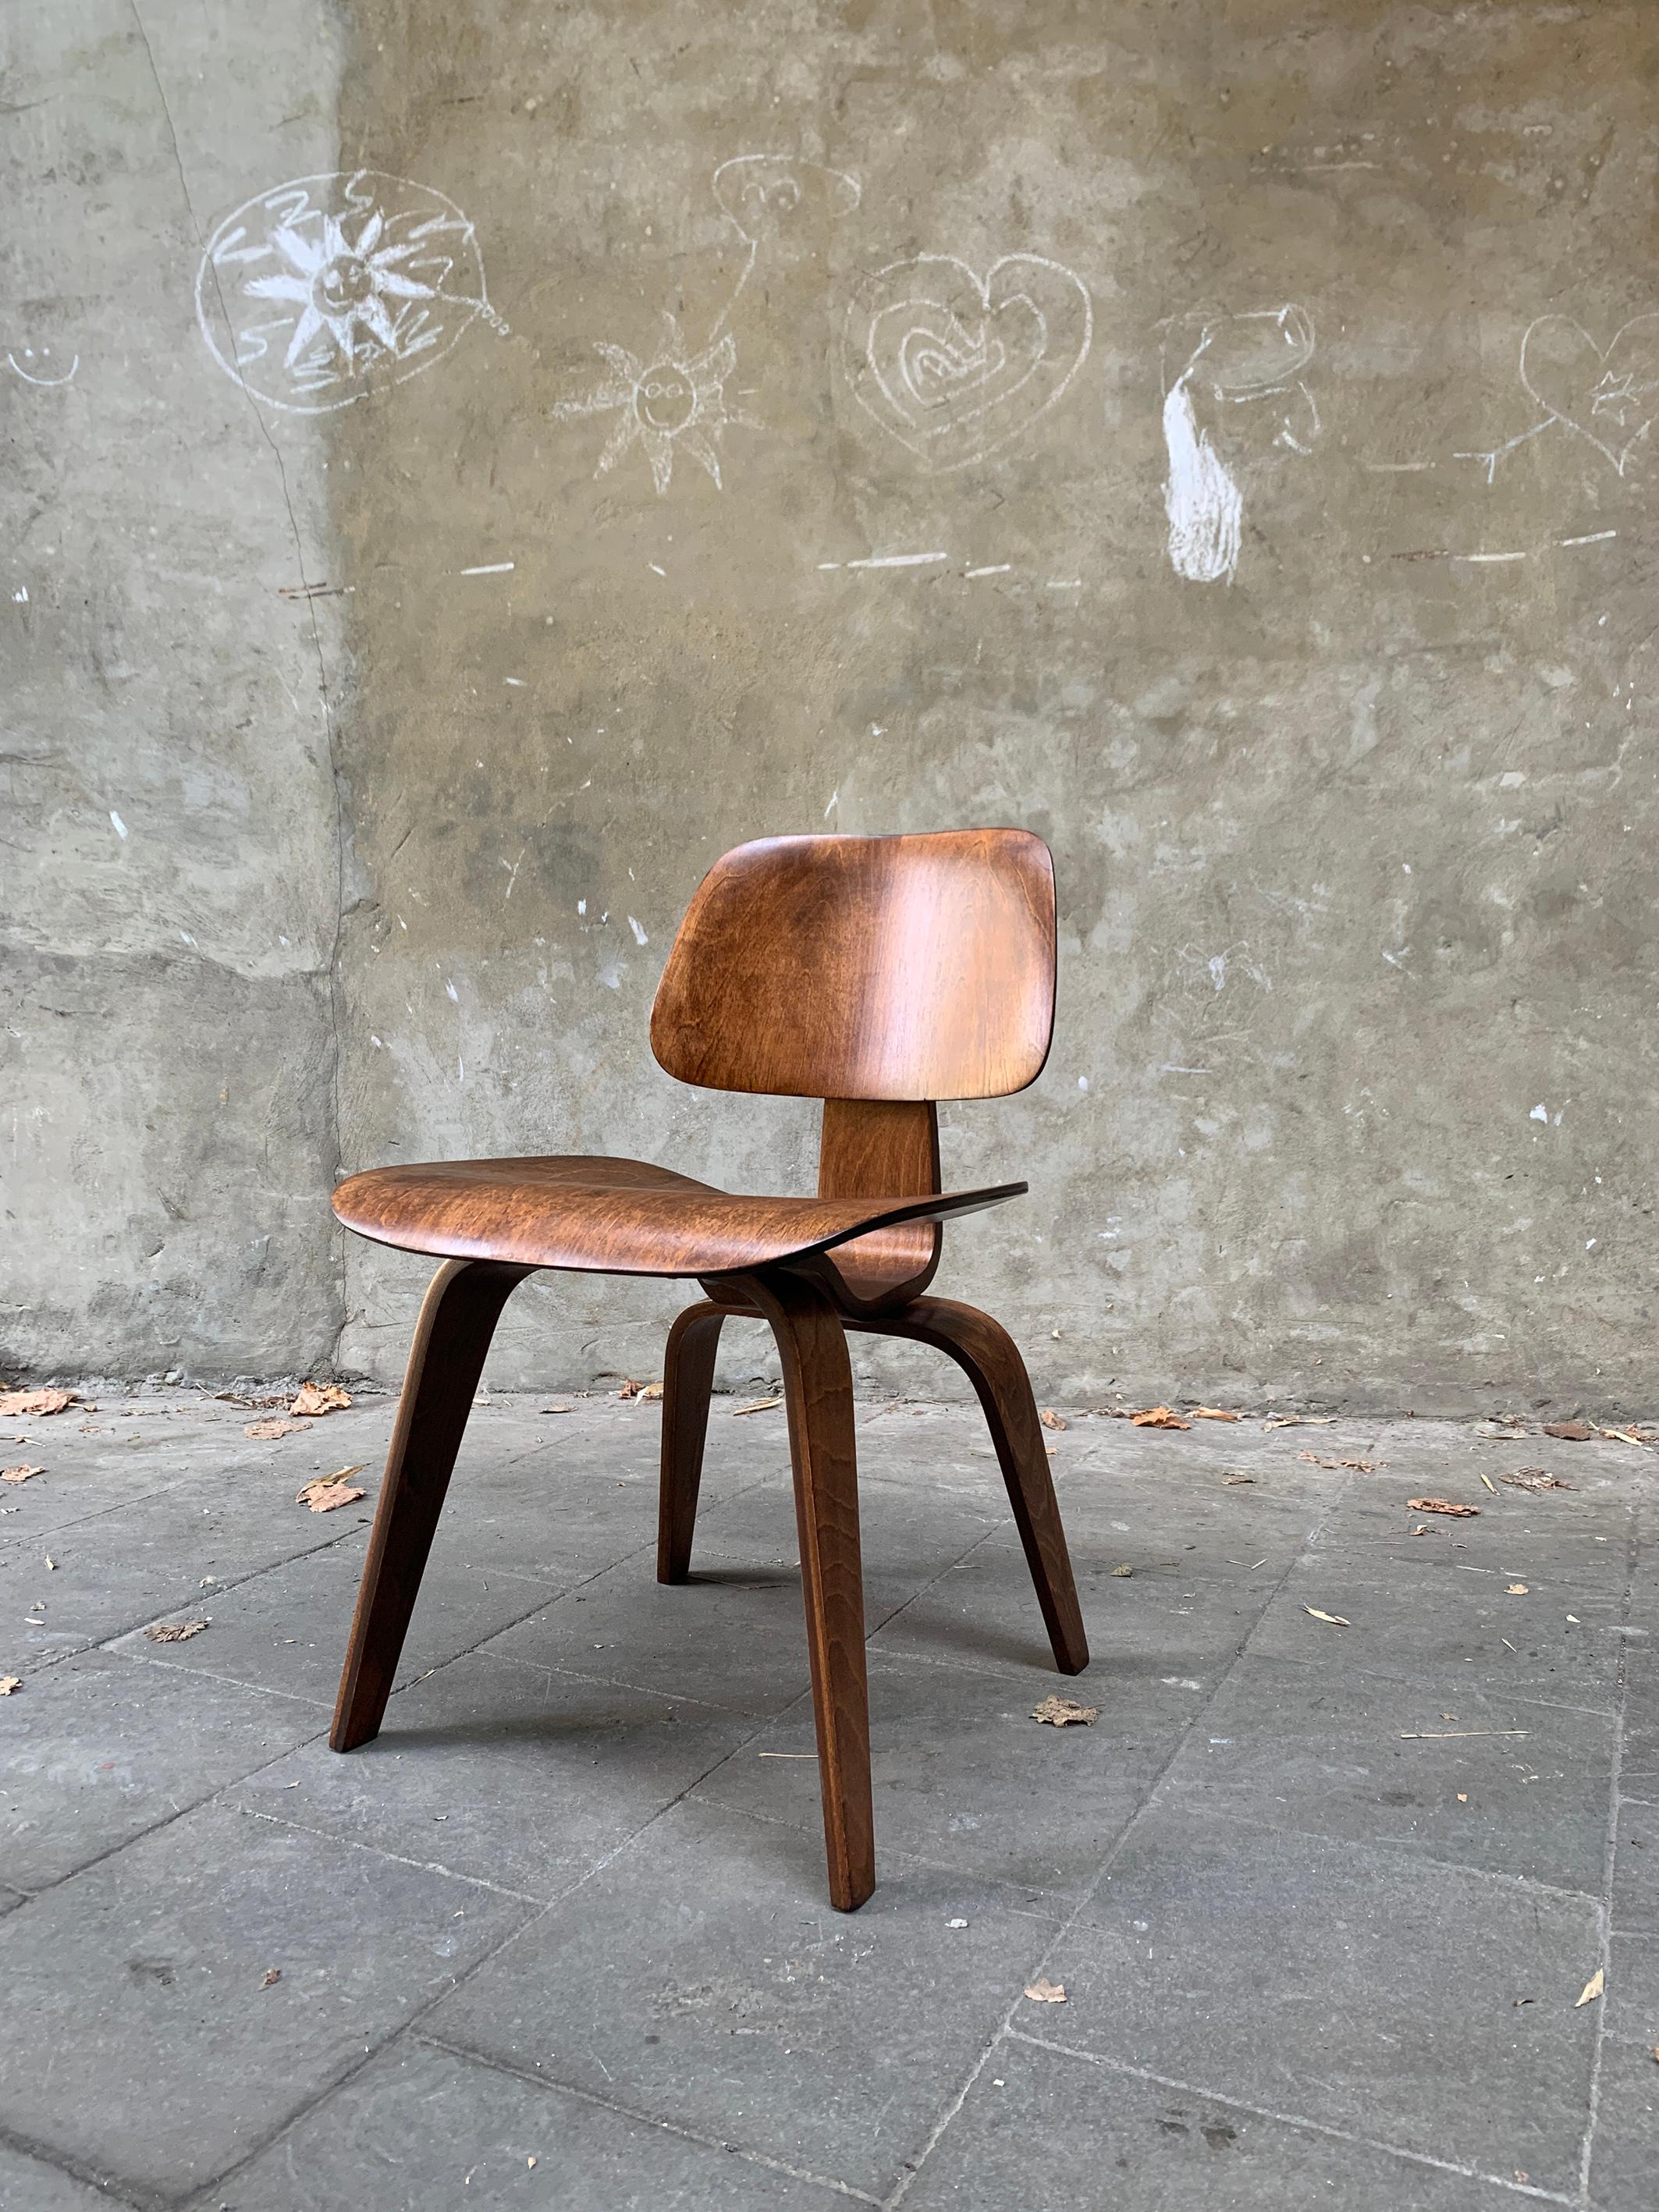 Der DCW-Stuhl (=Dining Chair Wood) wurde um 1945 von Charles und Ray Eames entworfen.
		
Dies ist ein Stuhl der ersten Generation, der zwischen 1946 und 1948 von der Evans Molded Plywood Company hergestellt wurde (Herman Miller kaufte 1949 die Evans